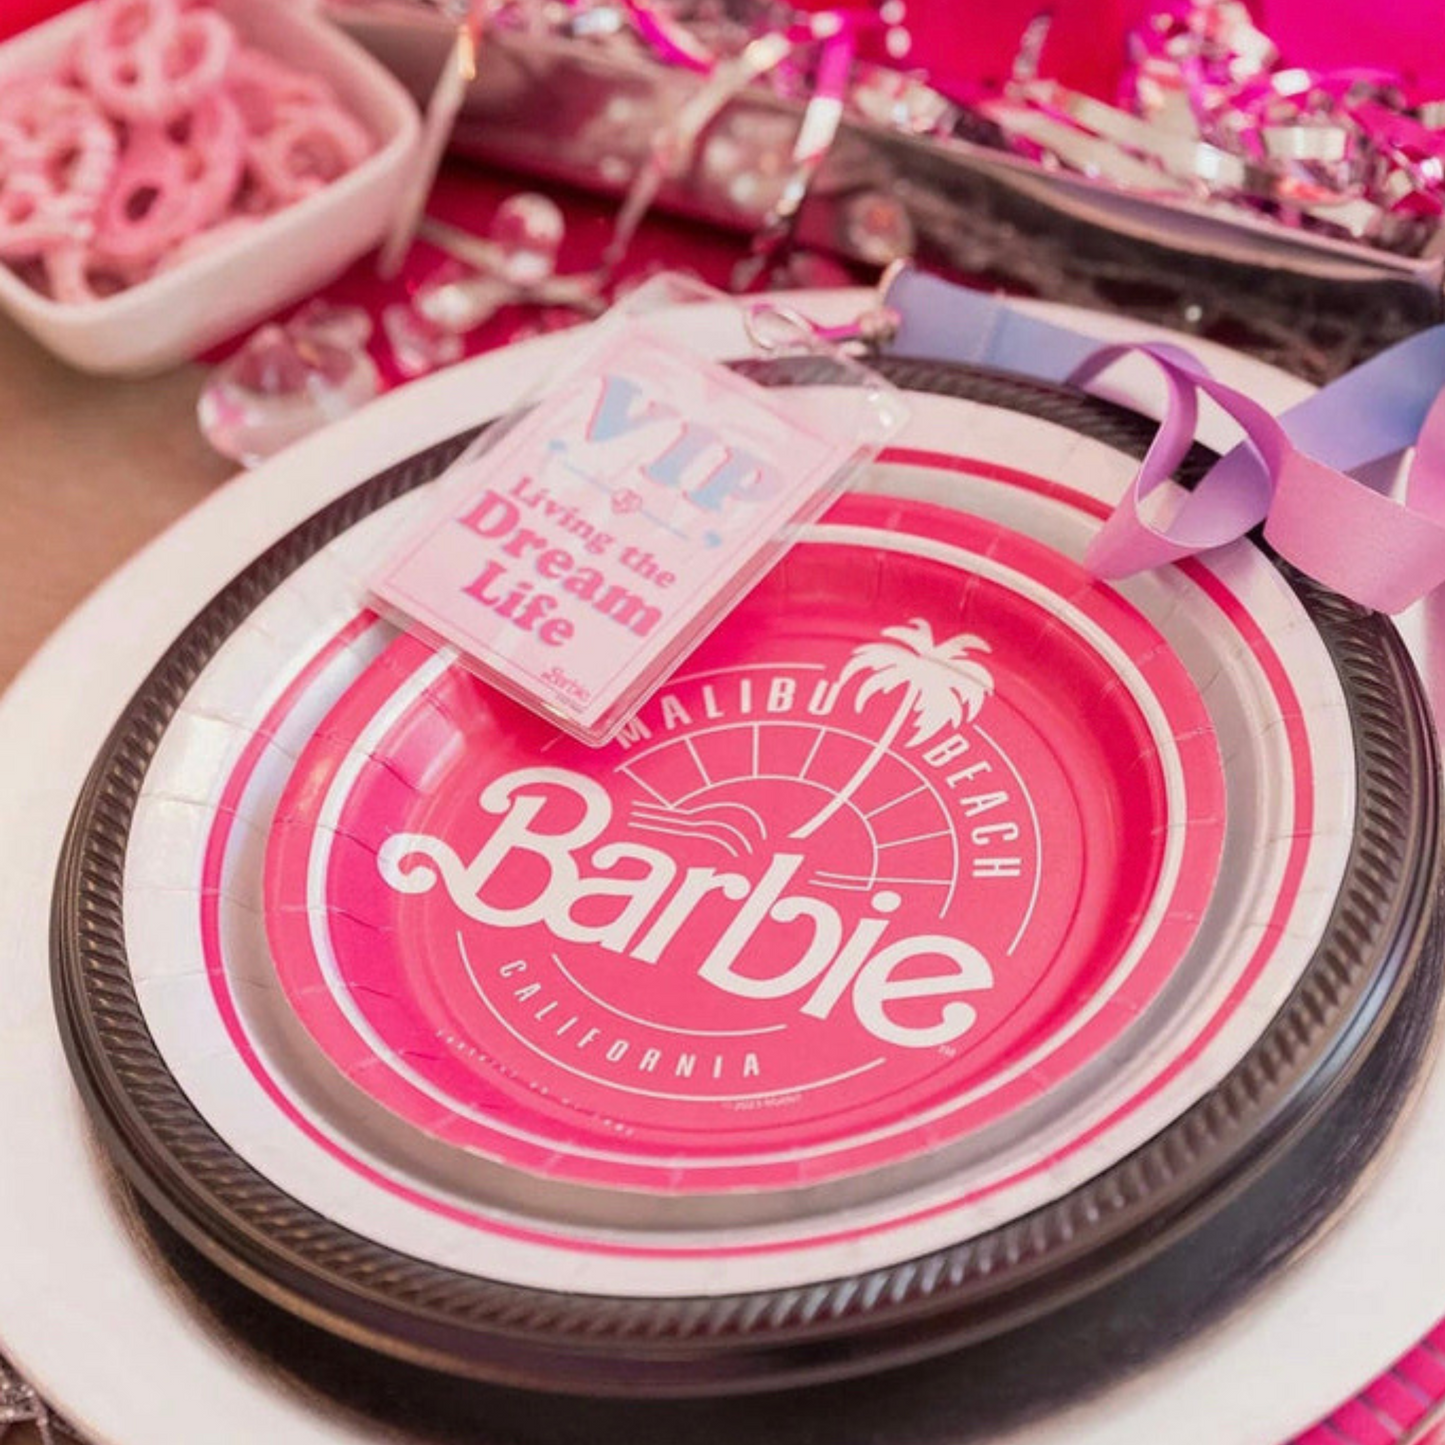 Pink Malibu Barbie 7" Dessert Plates